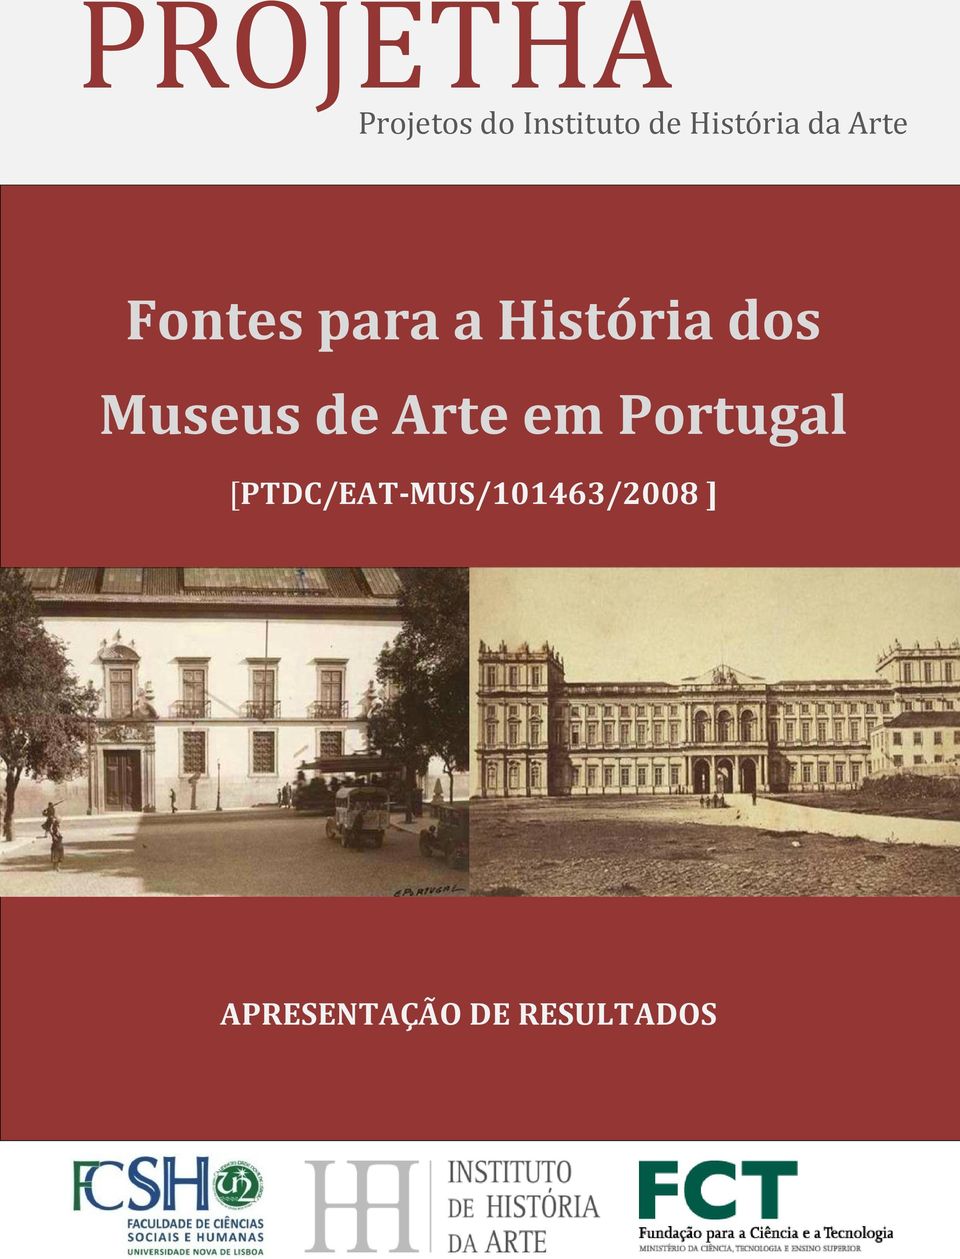 dos Museus de Arte em Portugal